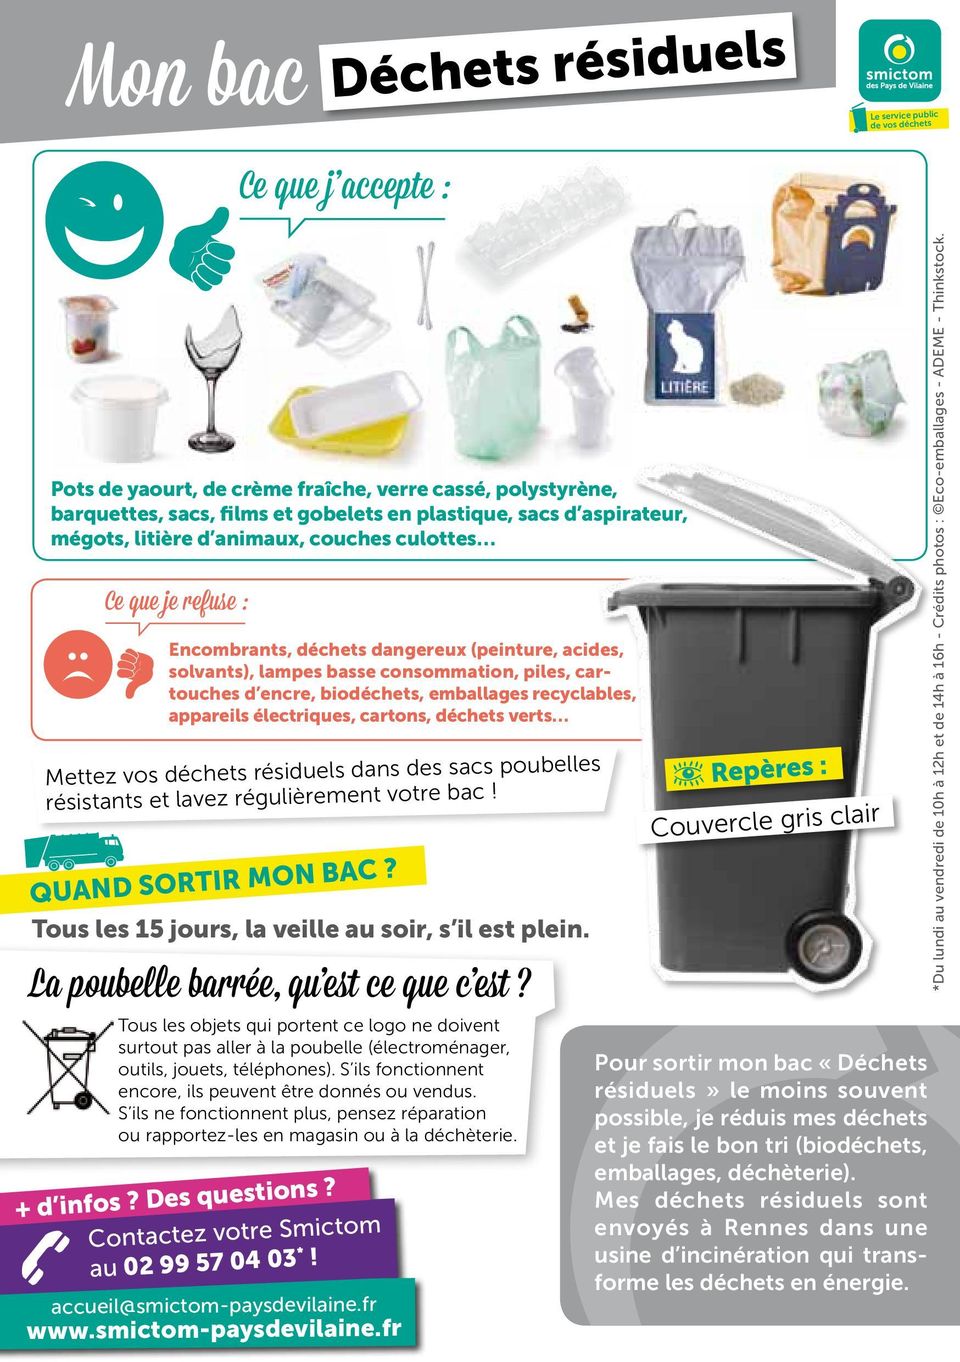 appareils électriques, cartons, déchets verts Mettez vos déchets résiduels dans des sacs poubelles résistants et lavez régulièrement votre bac! Quand sortir mon bac?